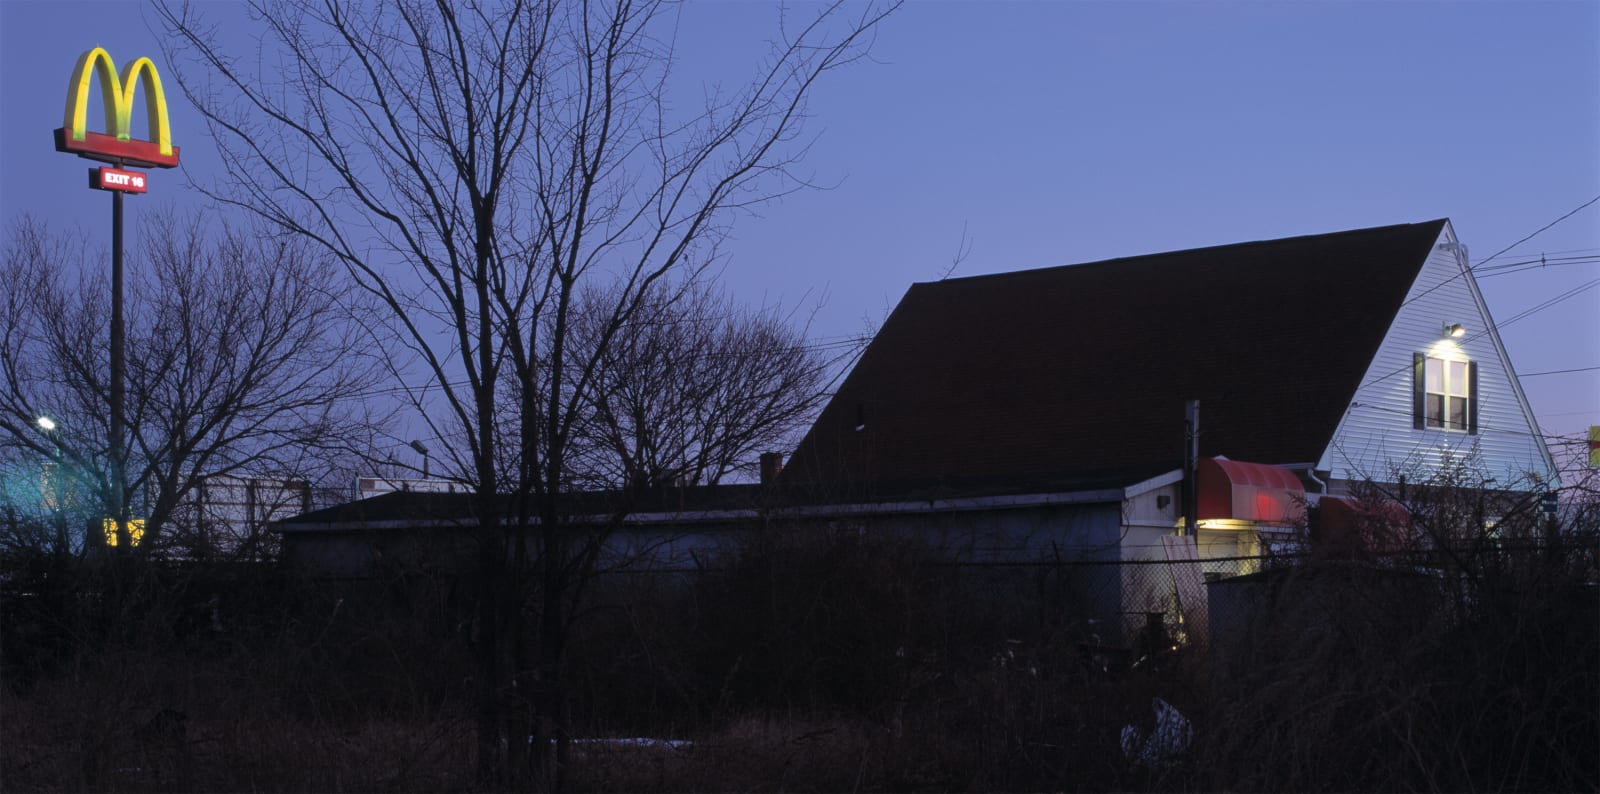 Jeff Brouws, Franchised Landscape #16, 2006